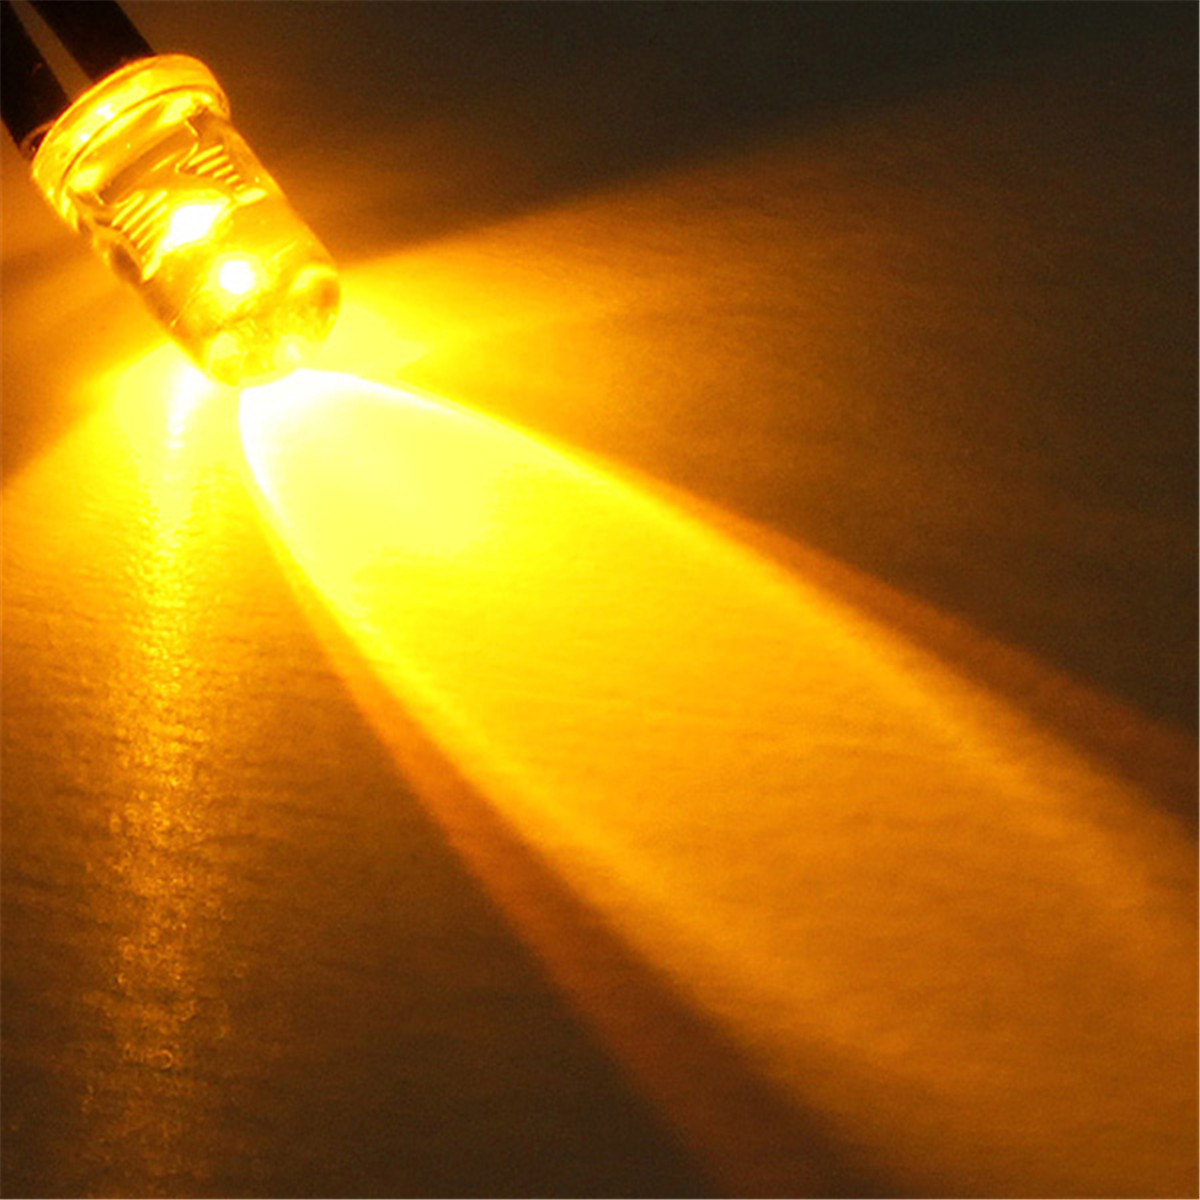 10pcs LED Lâmpada bulbo 20cm pré-cabeada 5mm 12V DC Colorful luz